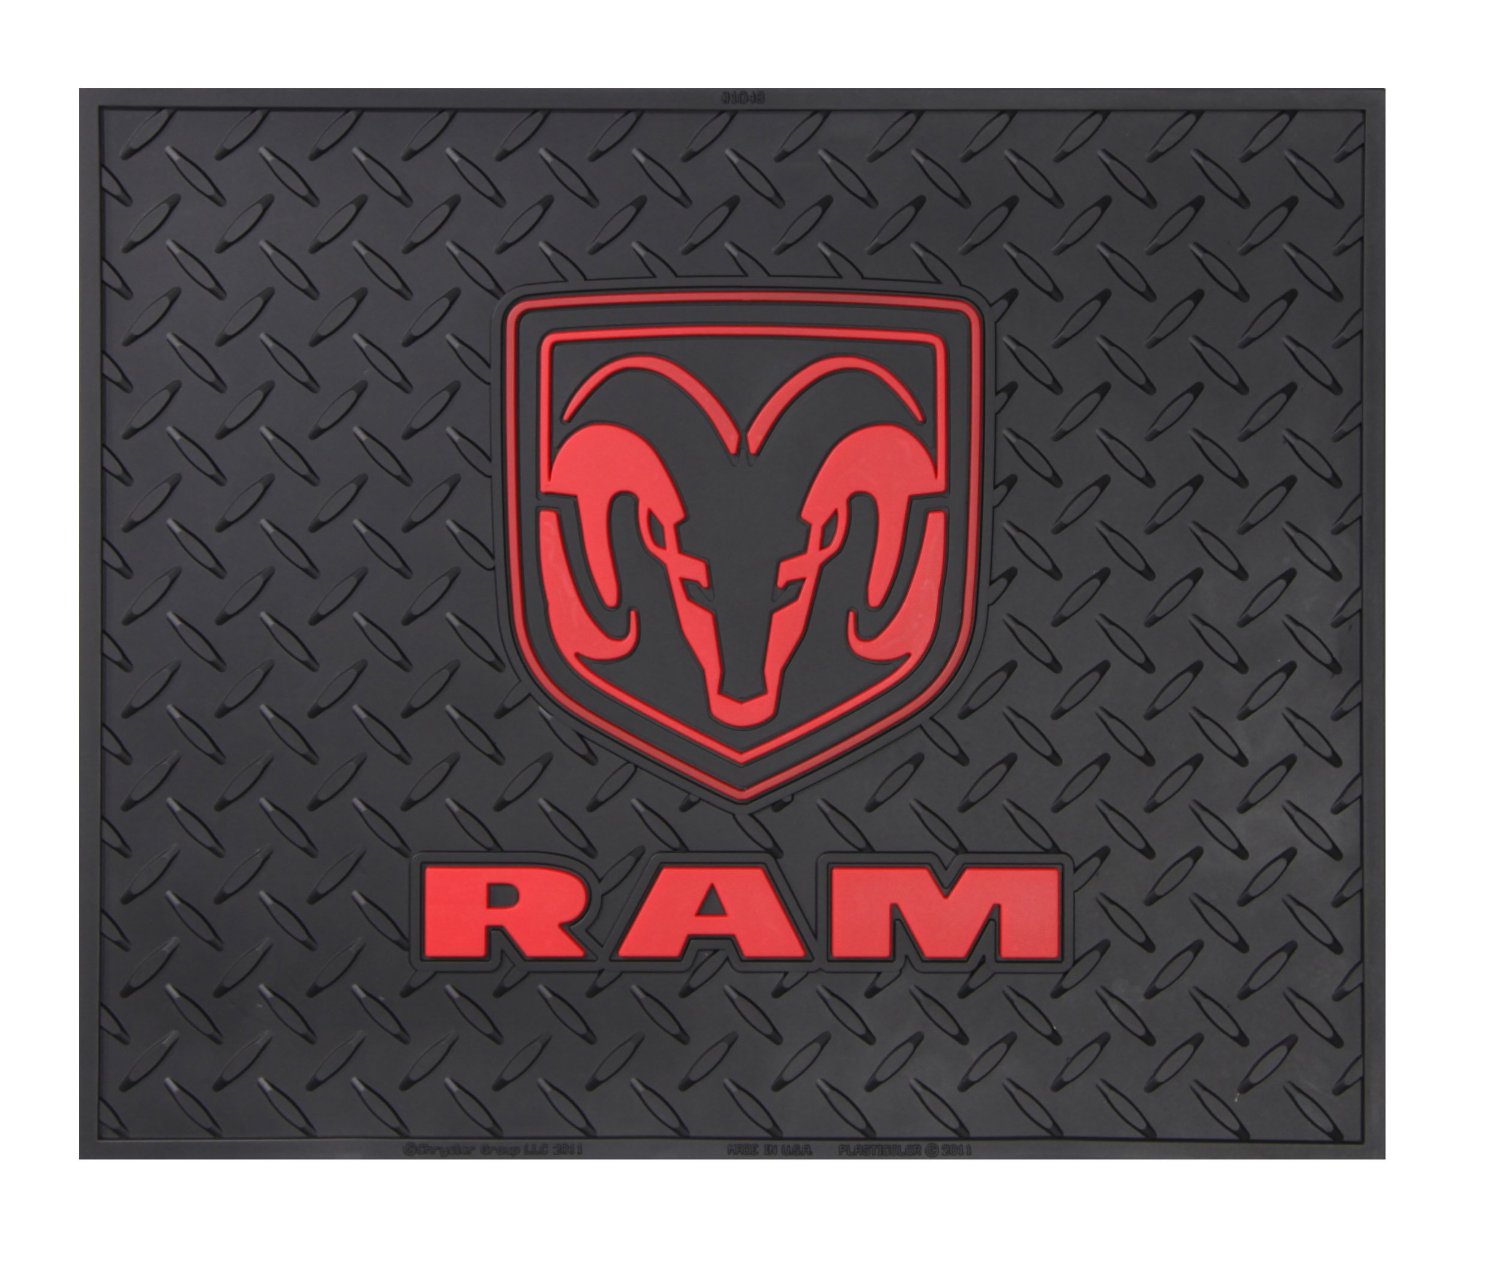 ram truck logo wallpaper